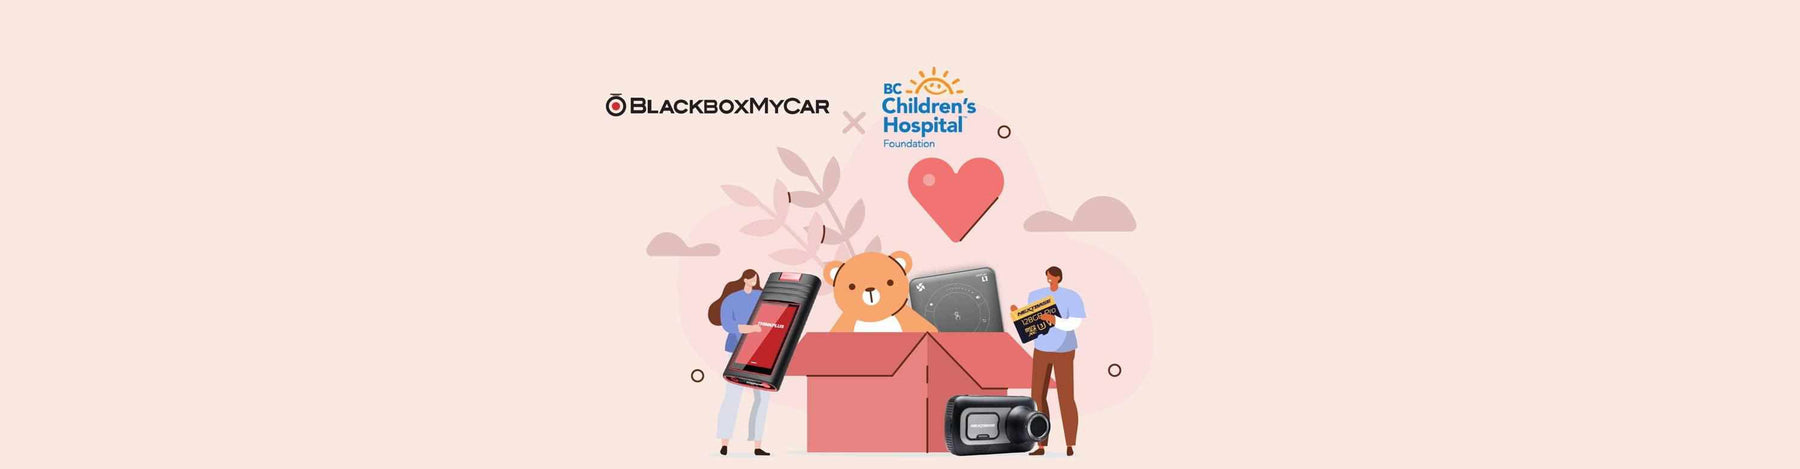 BlackboxMyCar | Helping Out In the Community - BC Children's Hospital Foundation 36th Annual Crystal Gala - - BlackboxMyCar